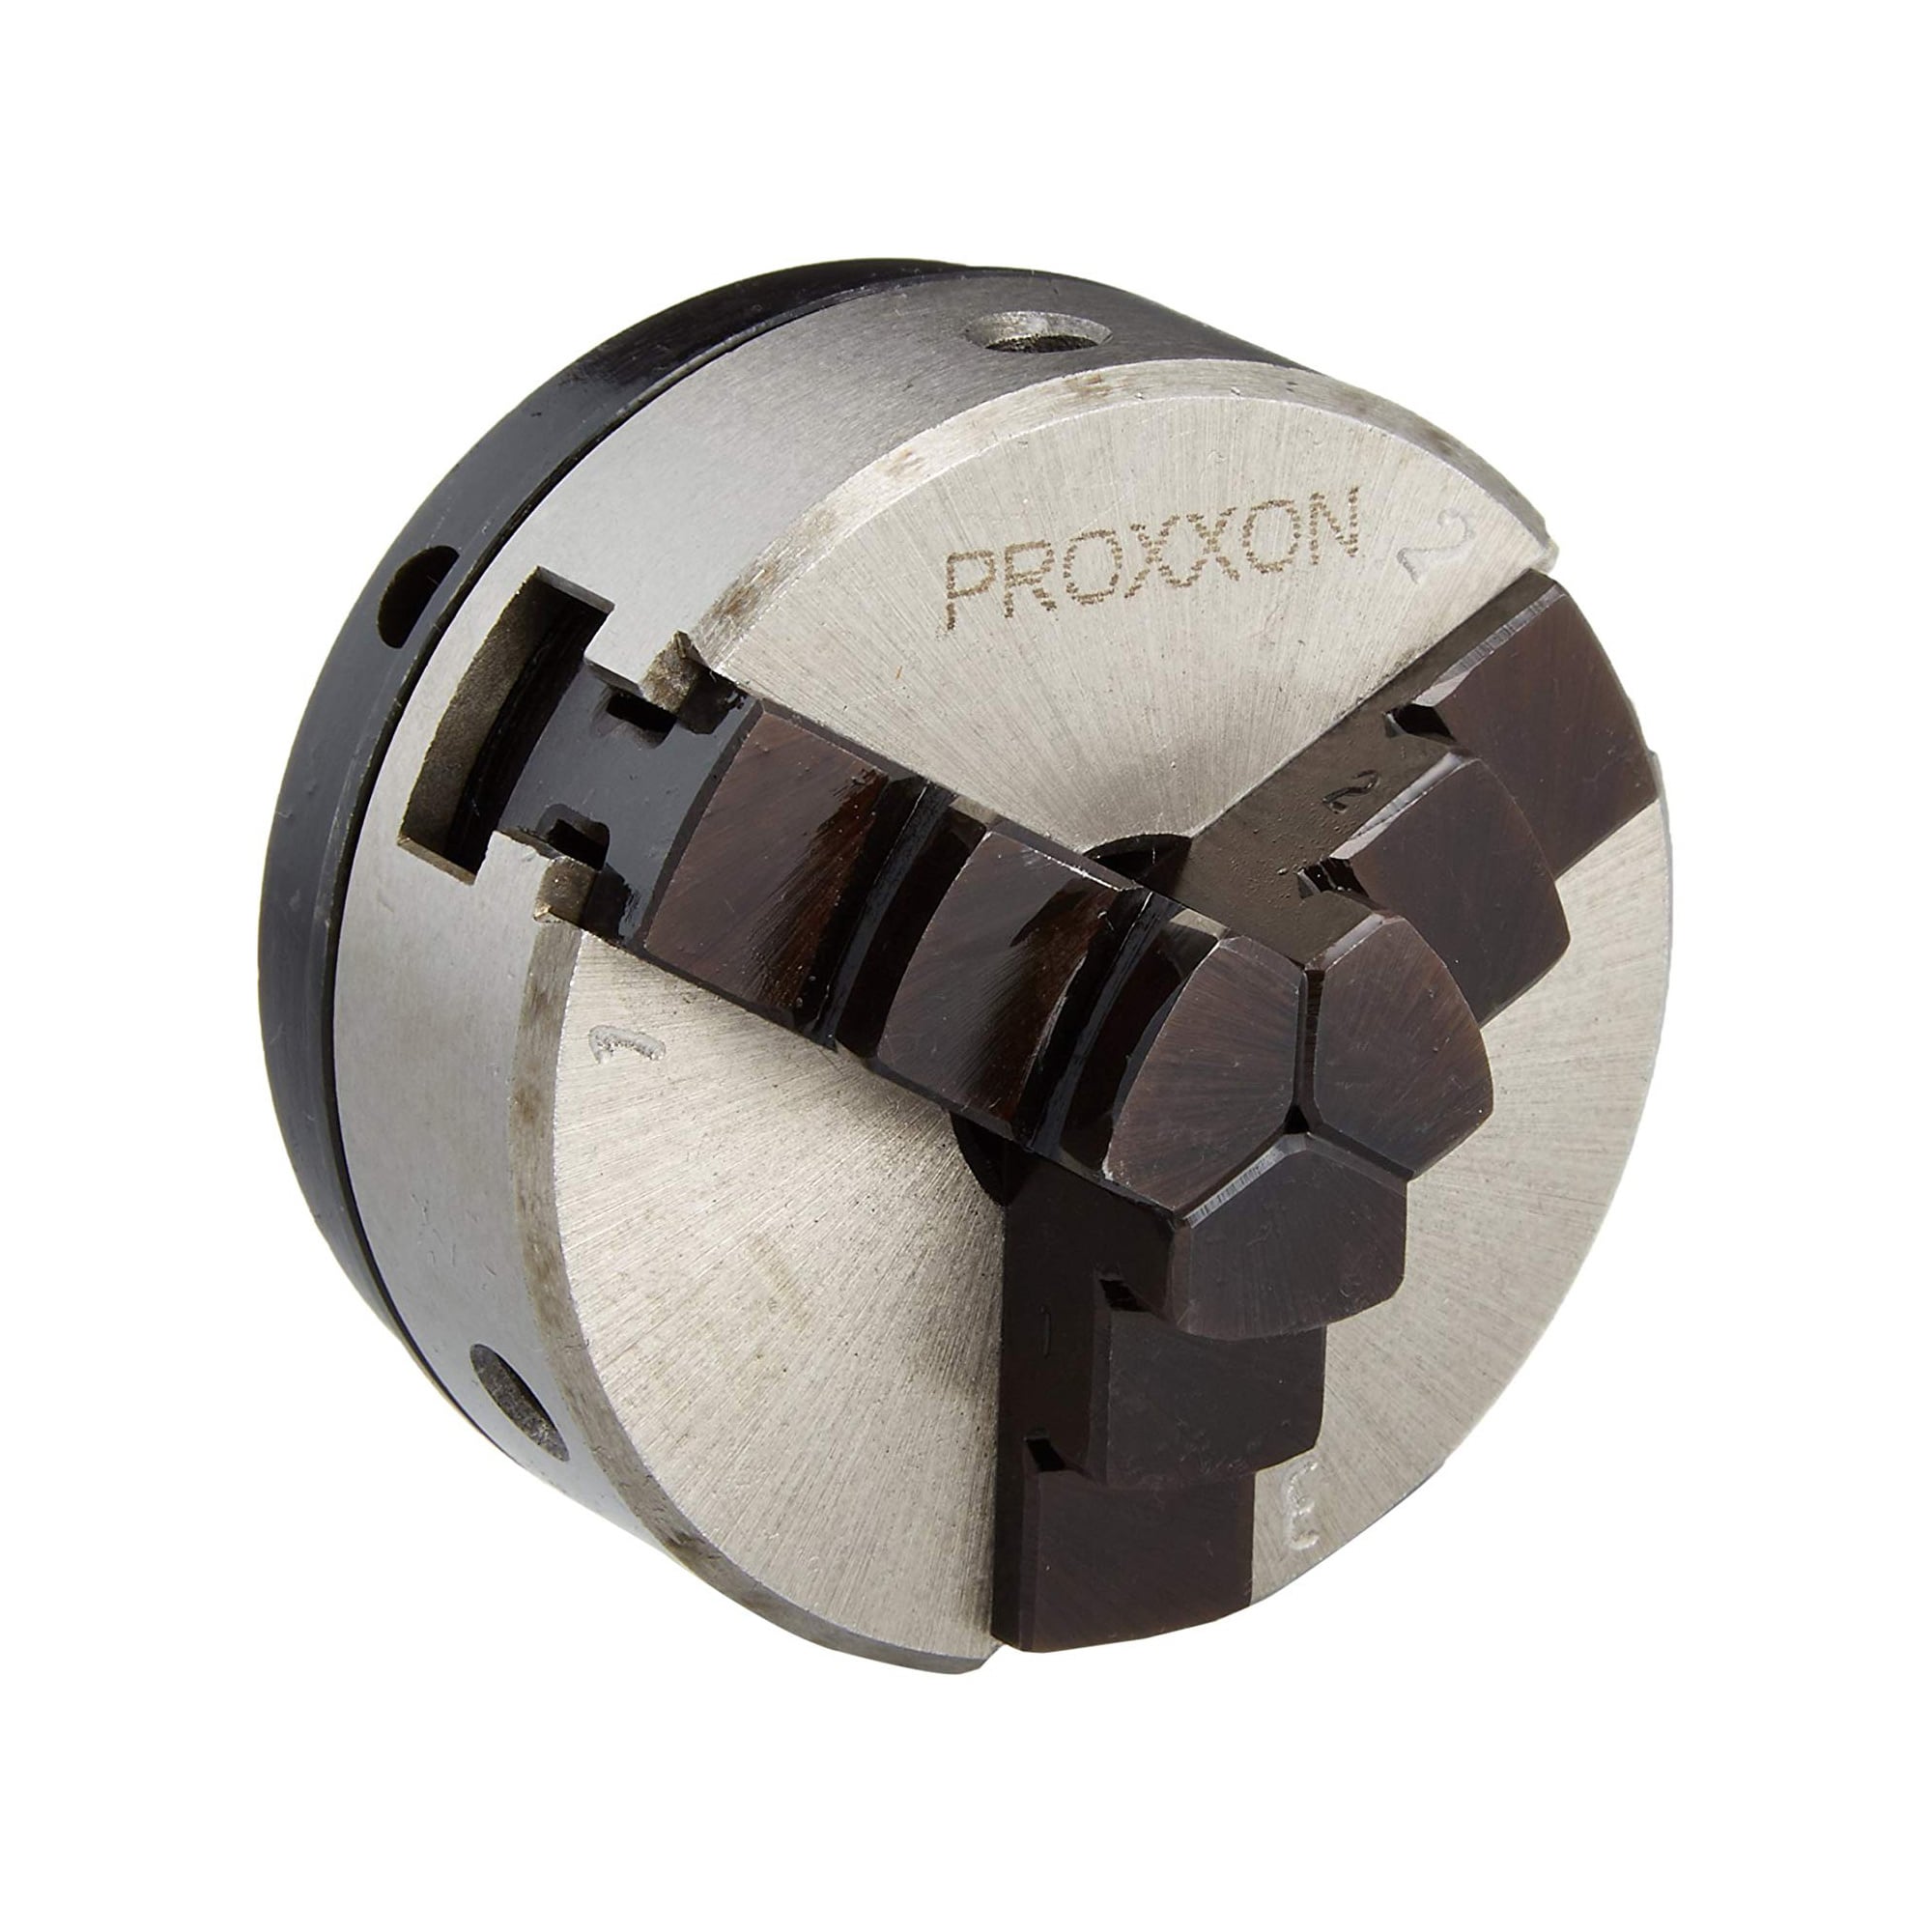 プロクソン(PROXXON) ウッドレースDX 卓上木工旋盤 幅広い作業が可能、別売のオプションも充実 No.27020 - 2